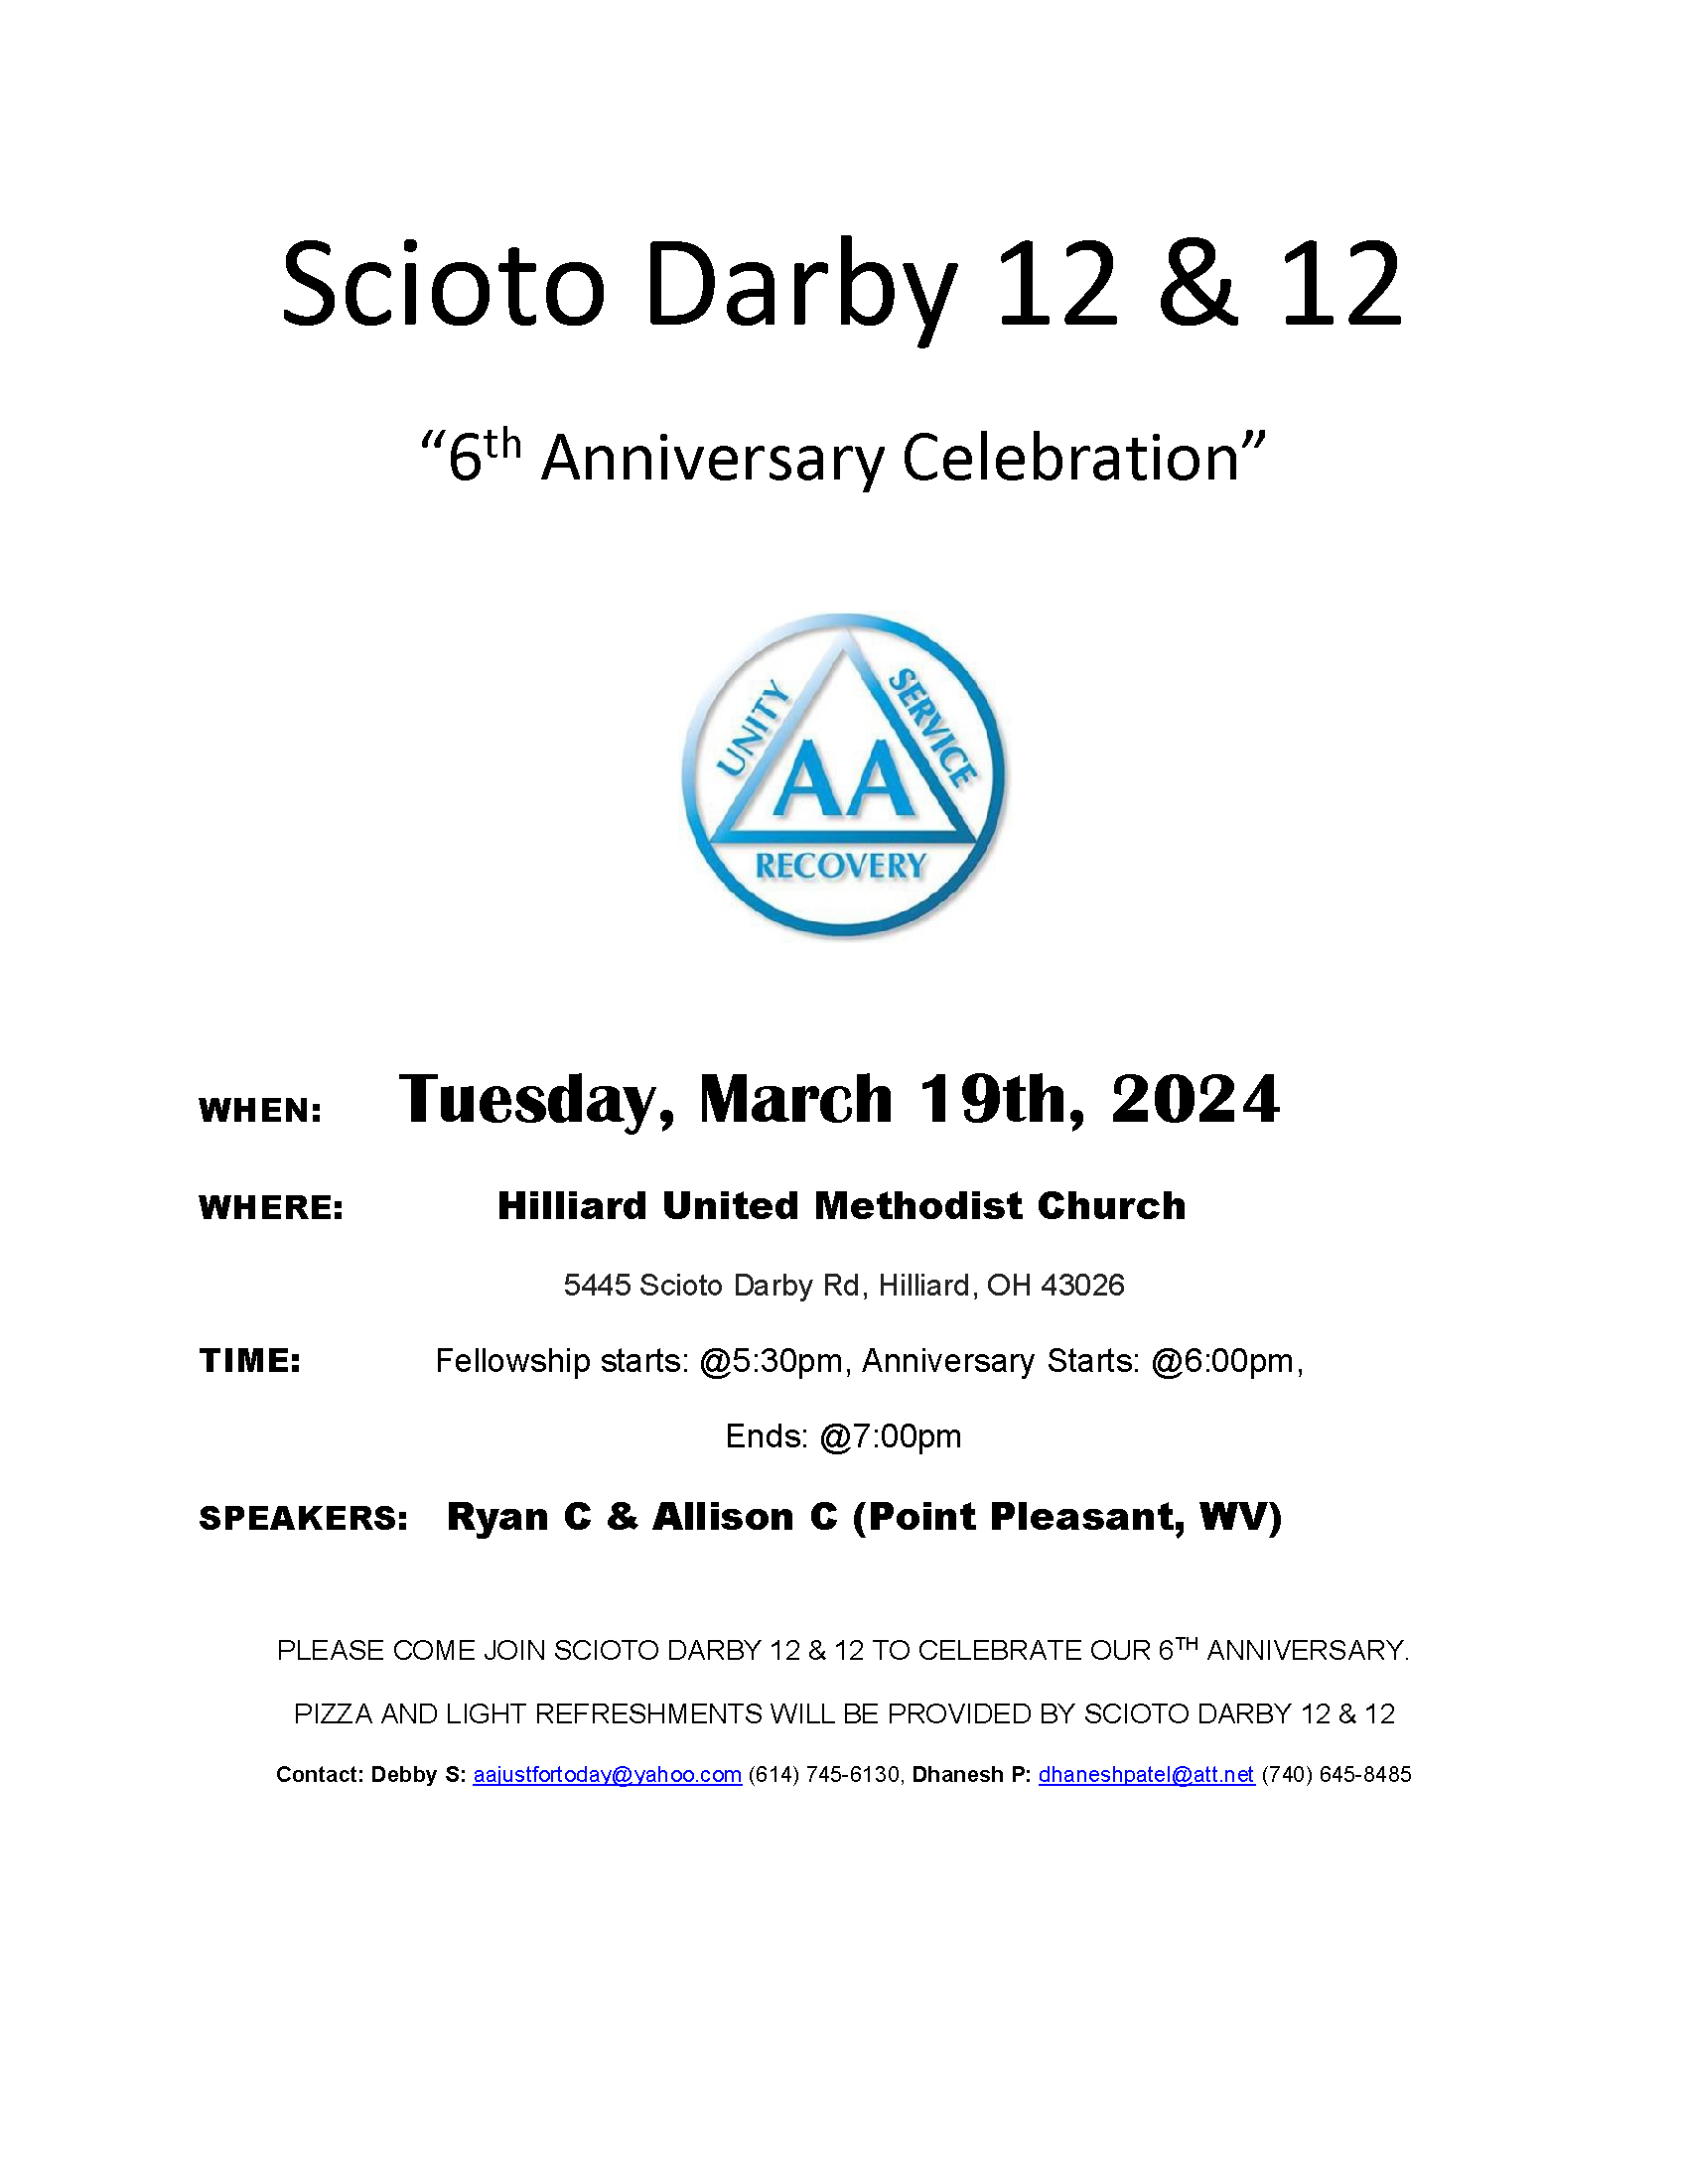 Scioto Darby 12&12 6th Anniversary March 19 2024